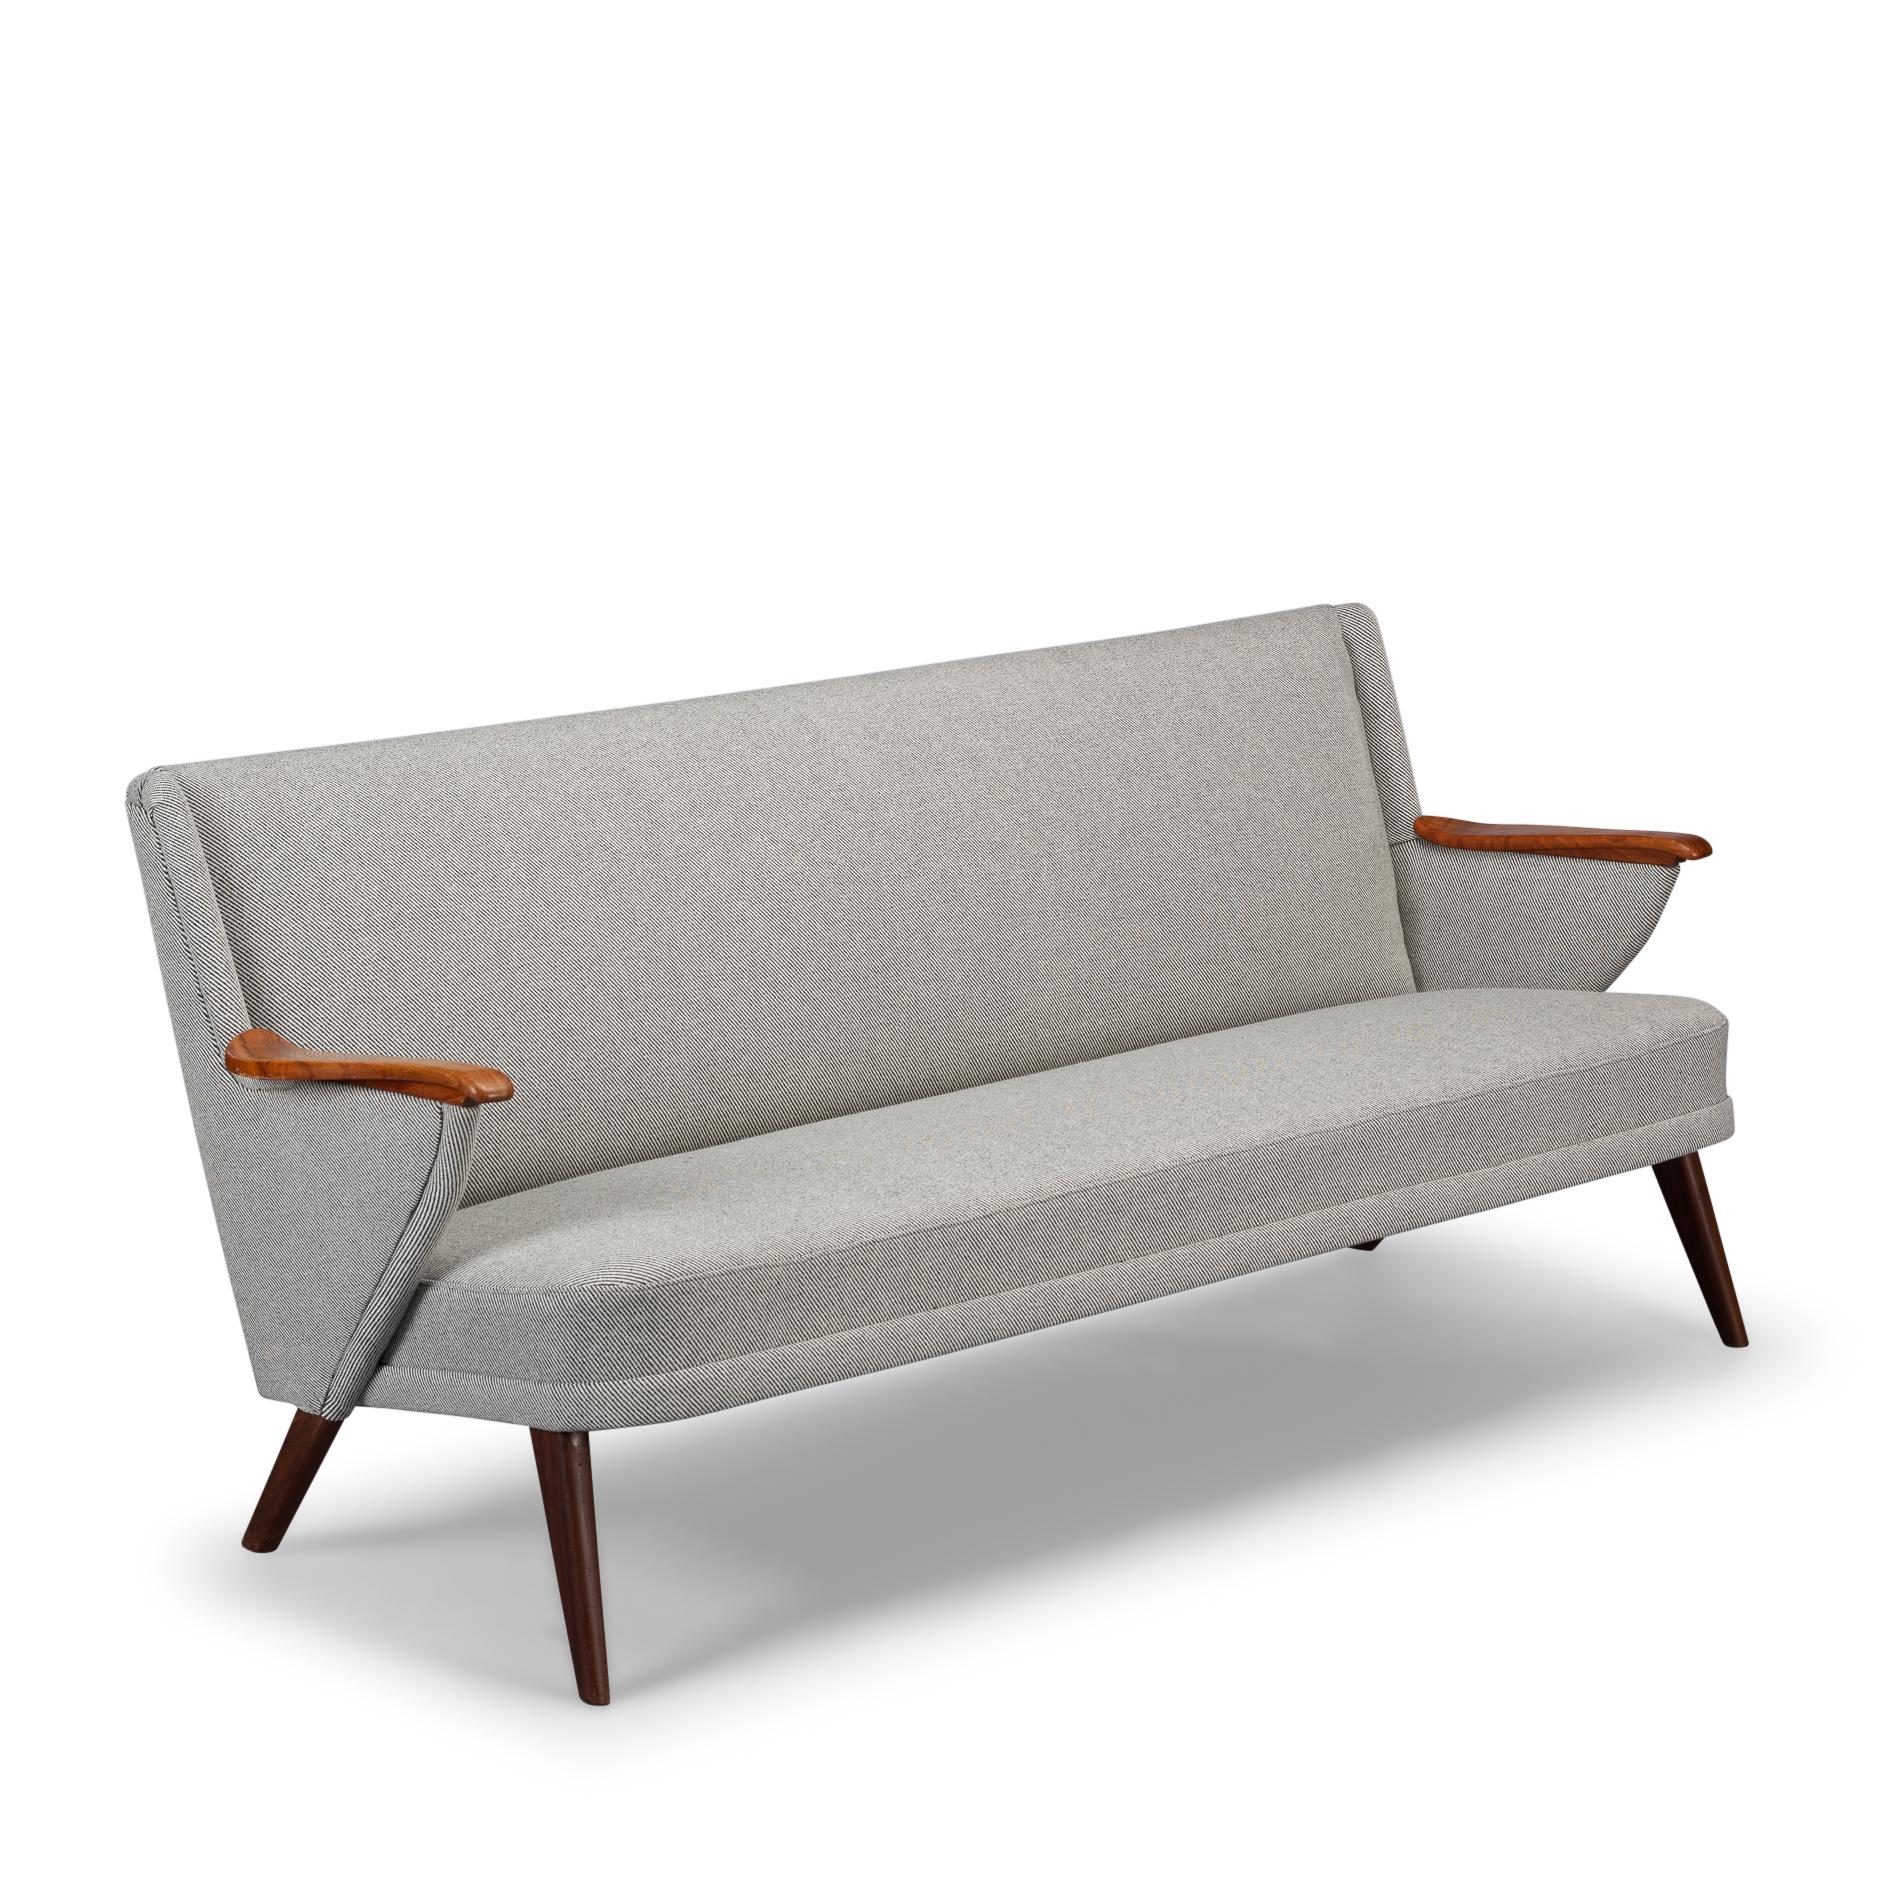 Edles Johannes Andersen-Sofa für CFC Silkeborg mit neuem Bezug. Dieses Sofa ist mit De Ploeg, Bergen12/08, neu gepolstert, in voller Übereinstimmung mit der Originalpolsterung, wie sie von Andersen entworfen wurde. Dieses Sofa hat einen geräumigen